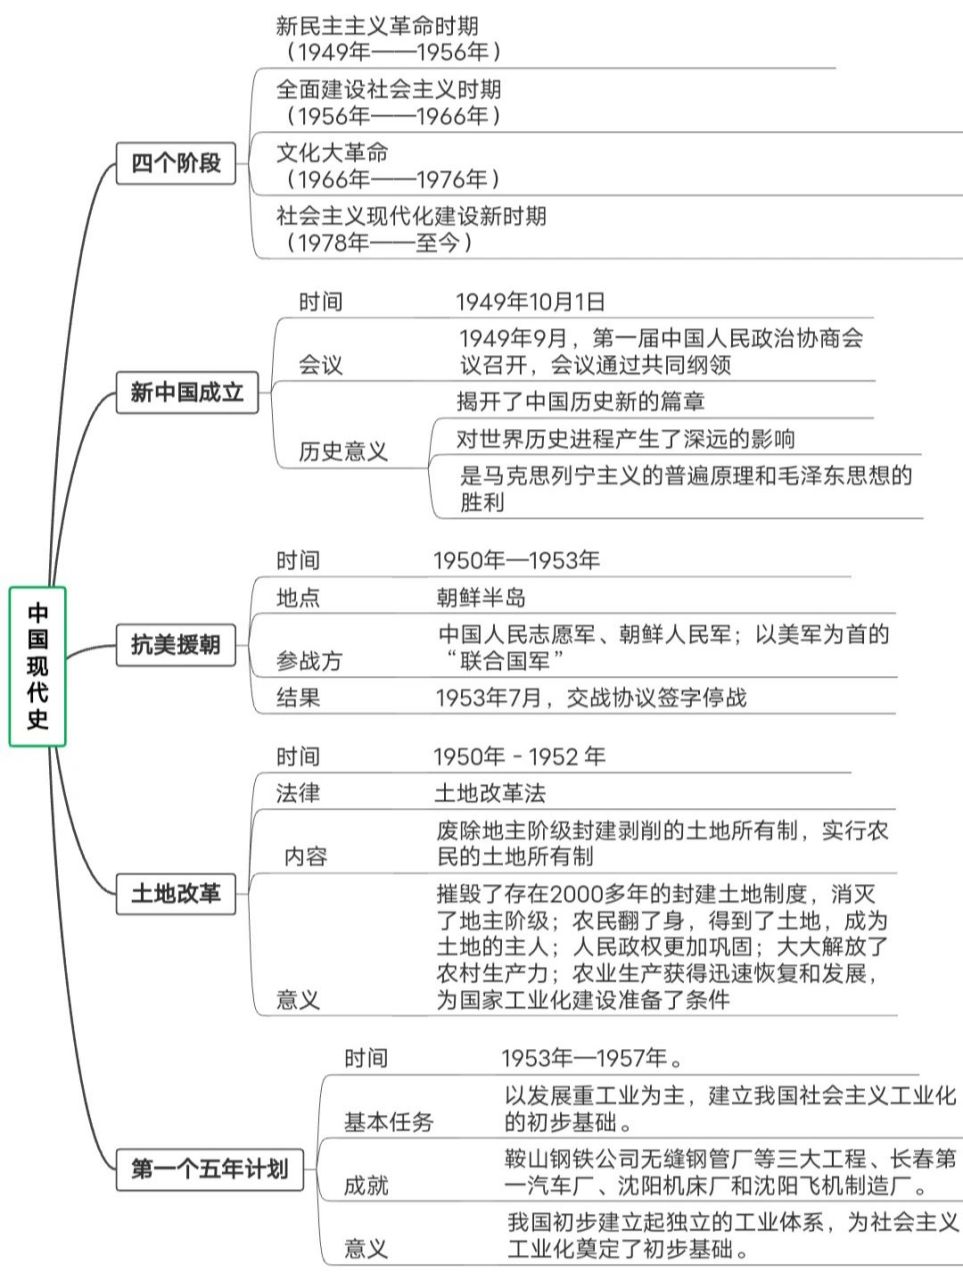 思维图——中国现代史 思维导图带你了解中国现代史,后续持续更新,求